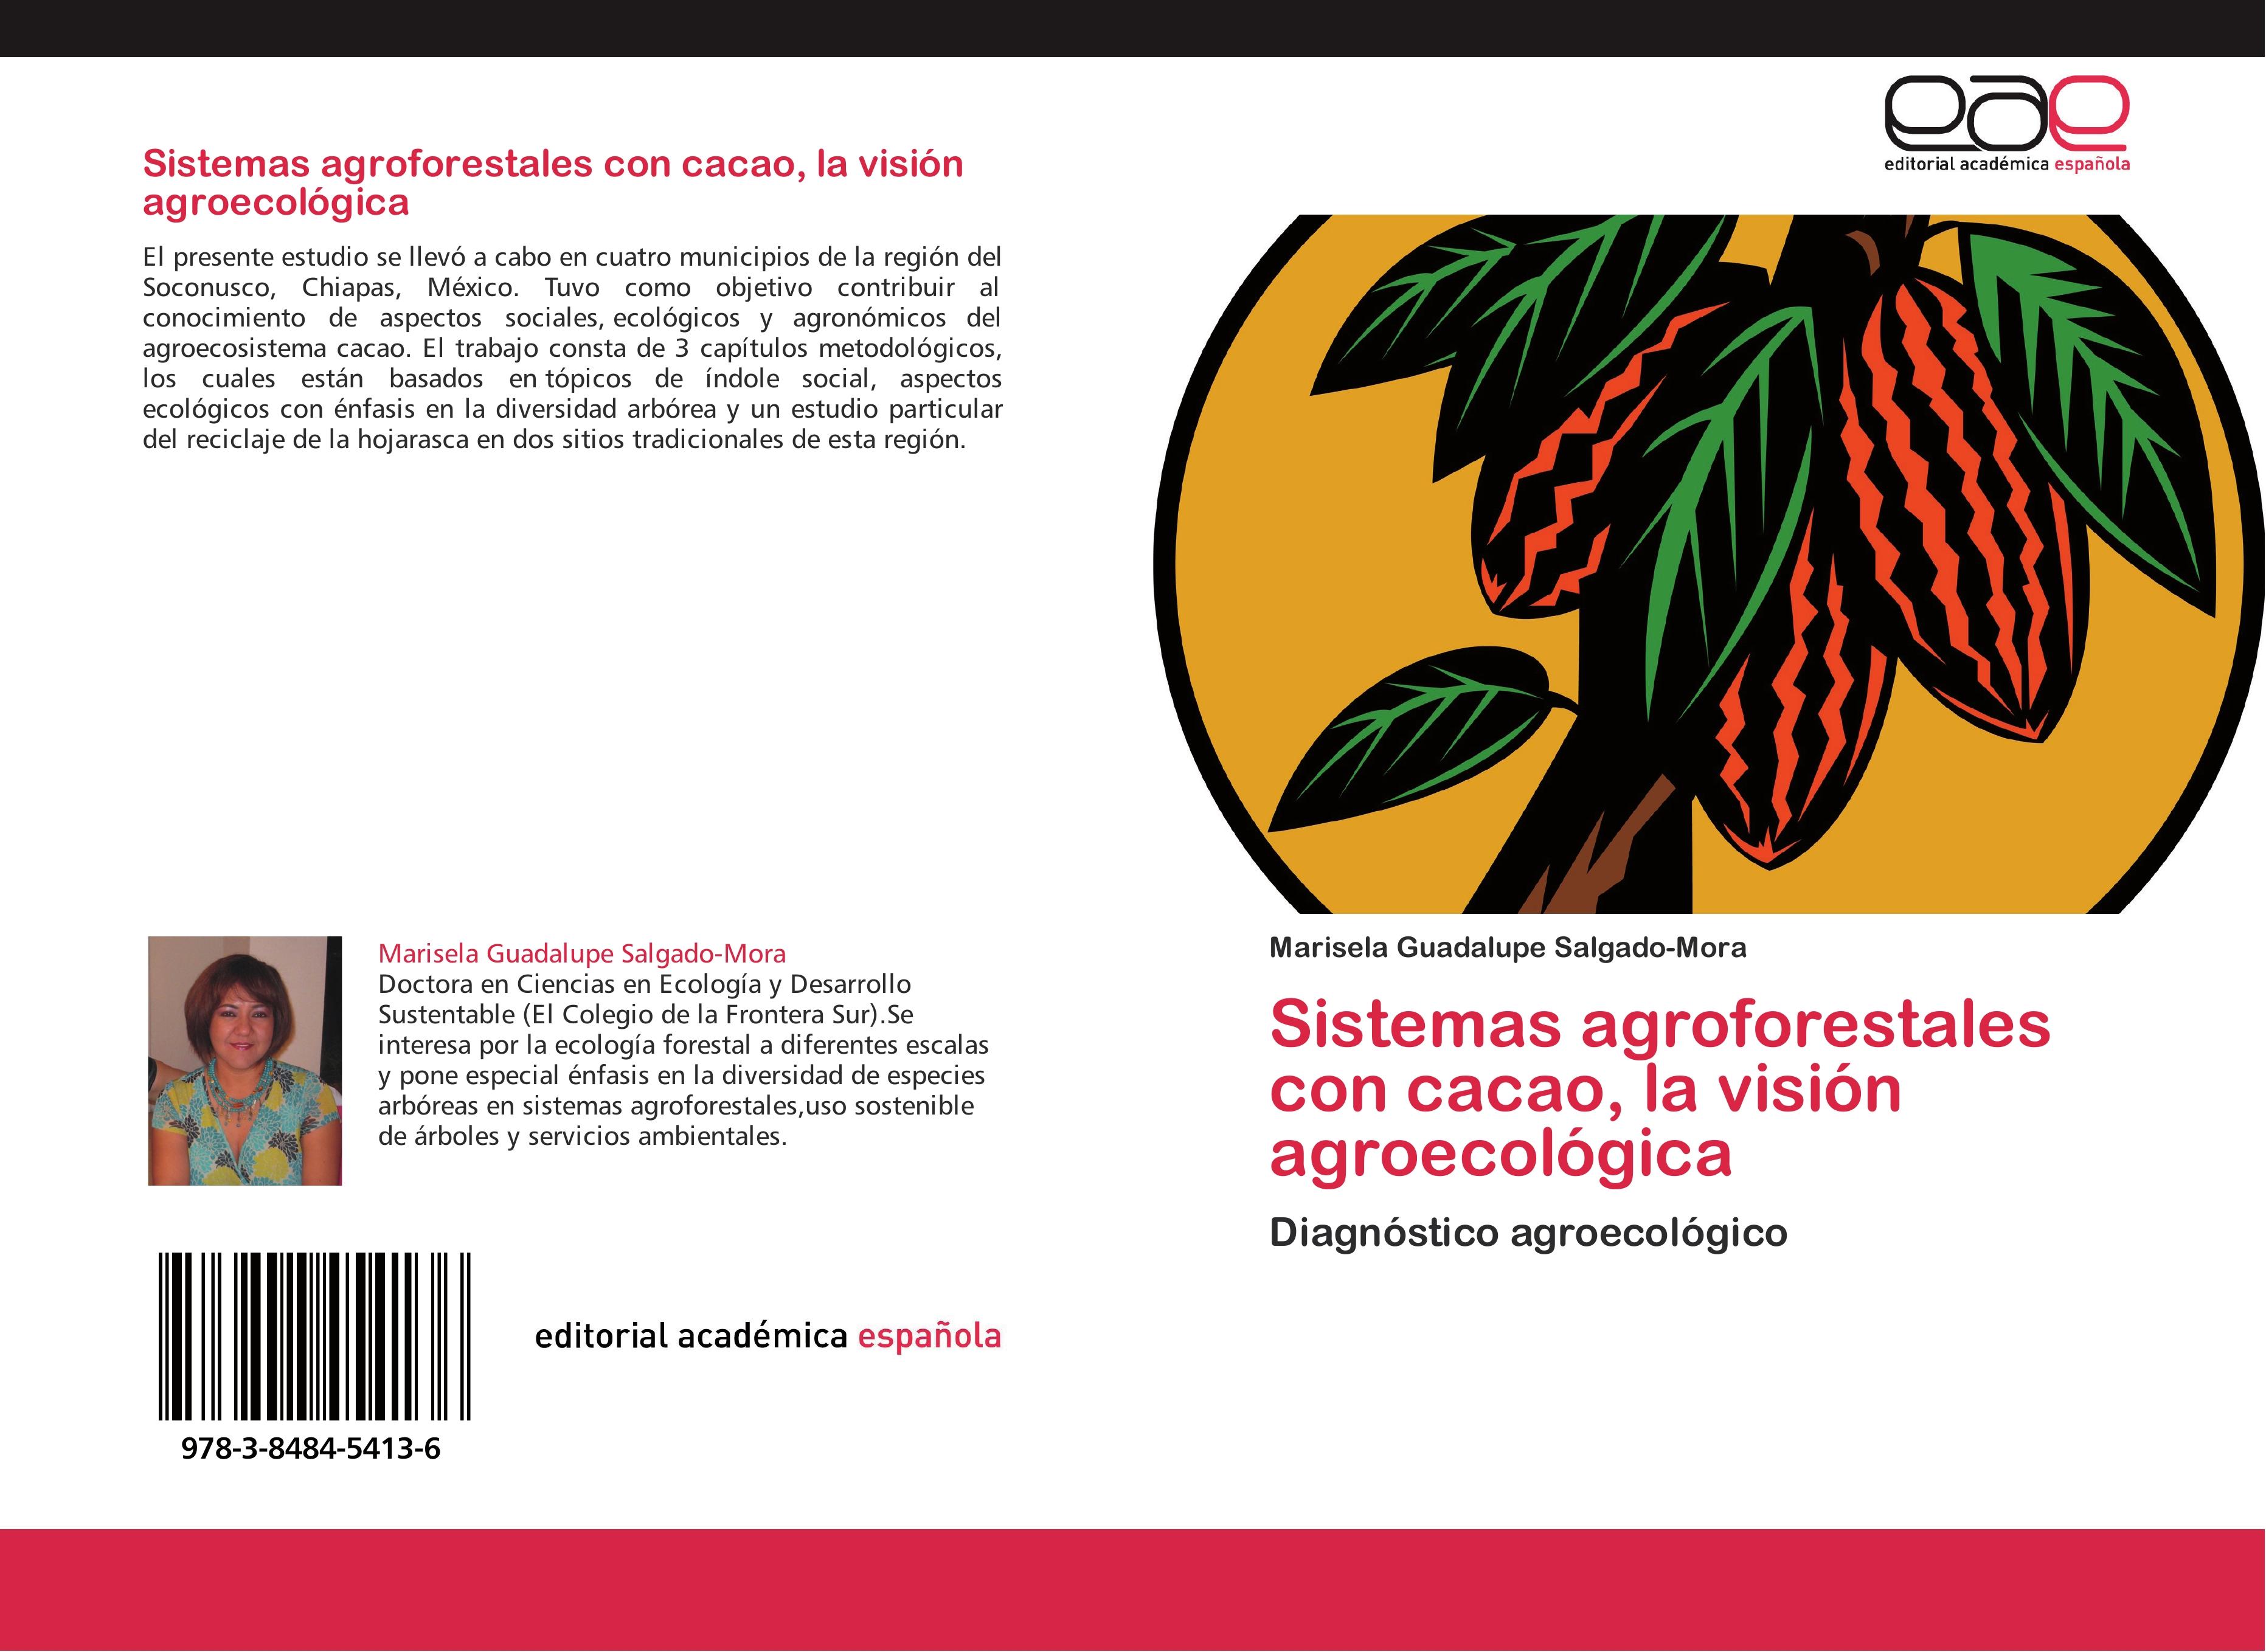 Sistemas agroforestales con cacao, la visión agroecológica | Diagnóstico agroecológico | Marisela Guadalupe Salgado-Mora | Taschenbuch | Paperback | 92 S. | Spanisch | 2012 | EAN 9783848454136 - Salgado-Mora, Marisela Guadalupe